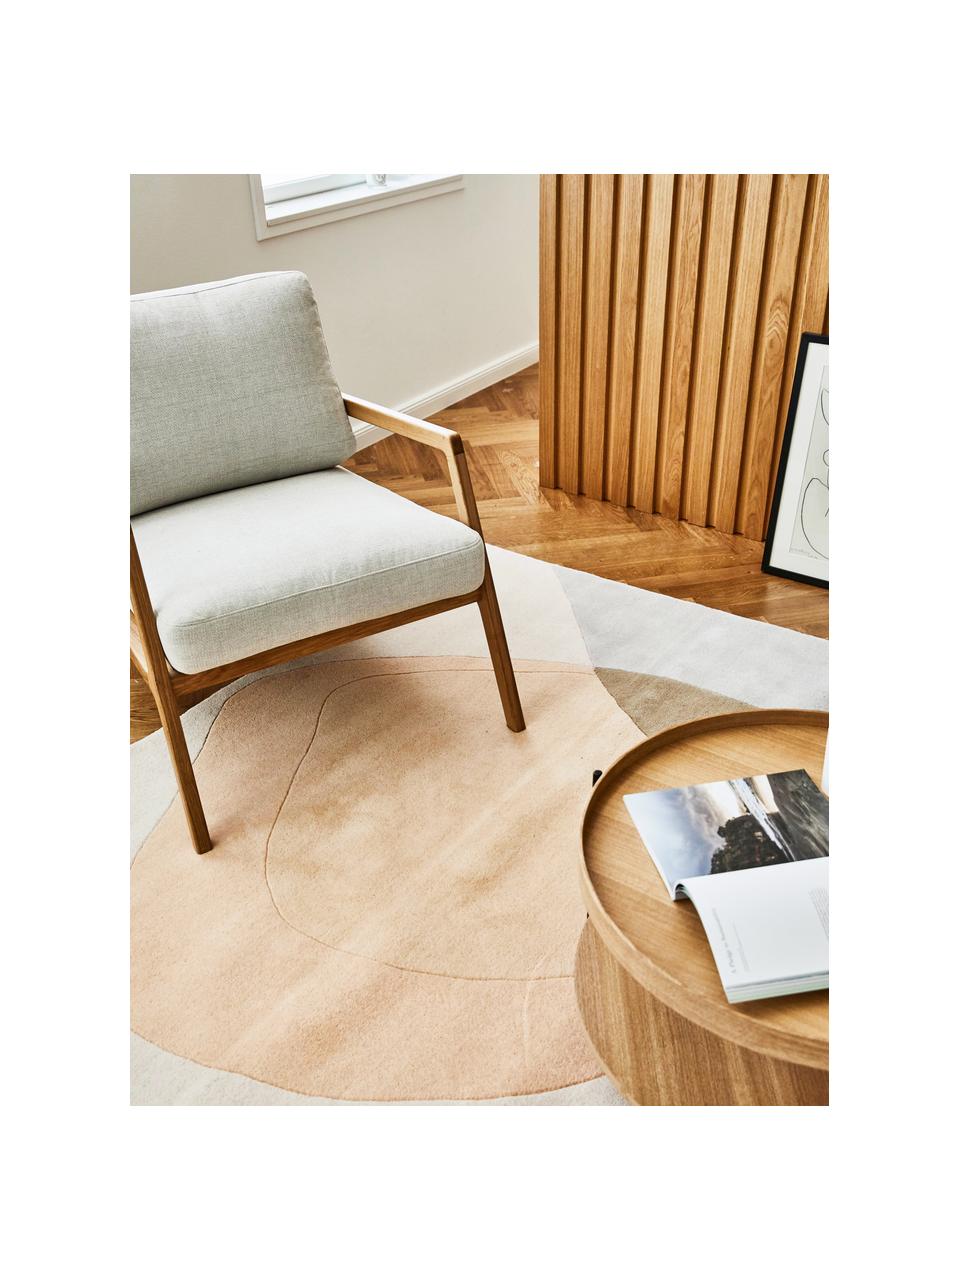 Ručně tkaný vlněný koberec s abstraktním vzorem Luke, Odstíny béžové, odstíny šedé, Š 160 cm, D 230 cm (velikost M)